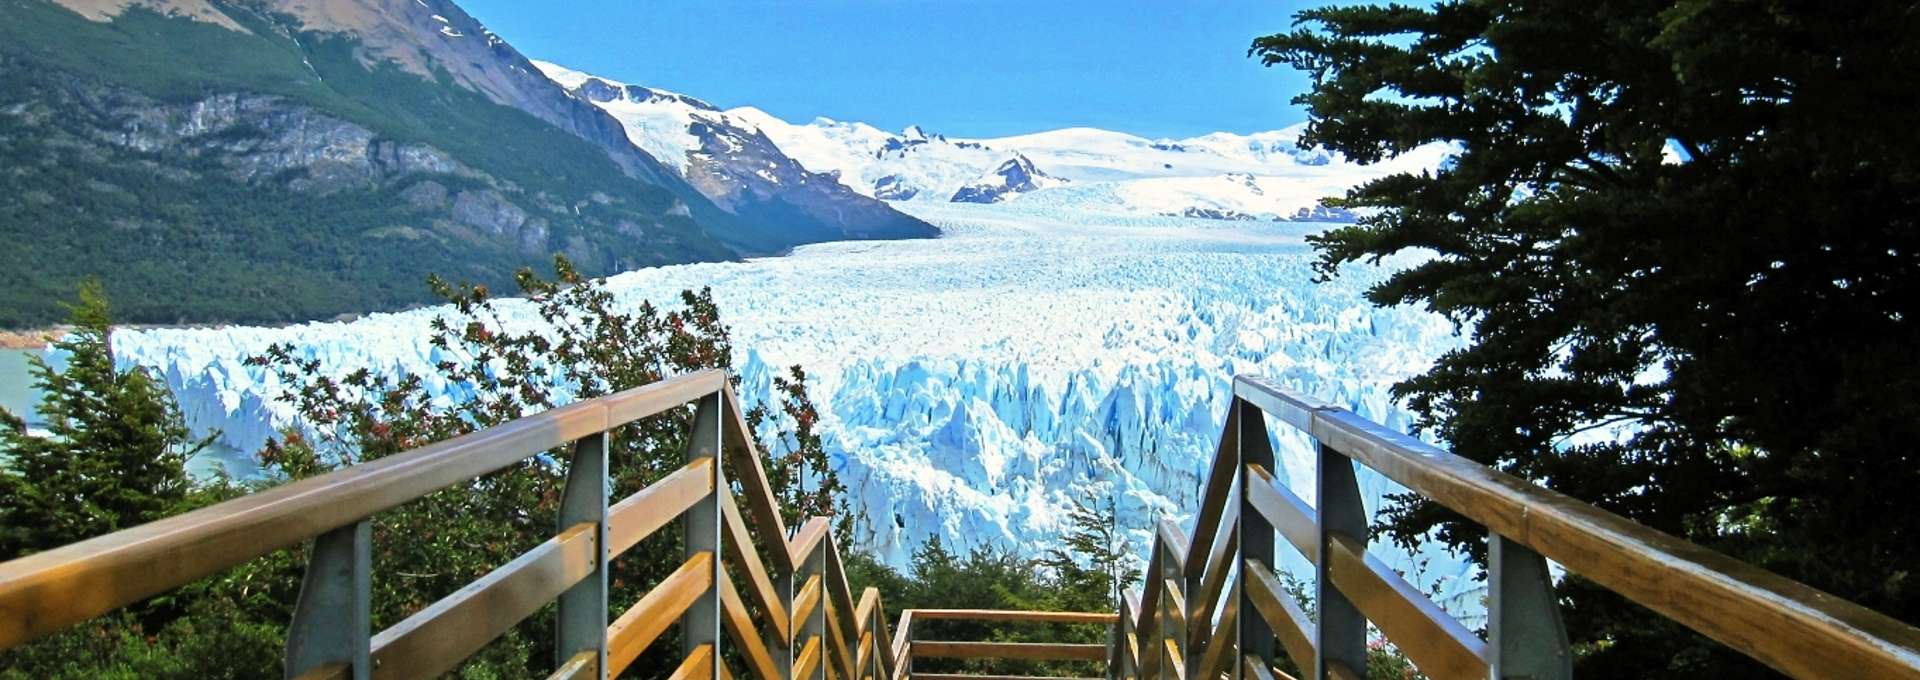 Glaciar Perito Morenoa